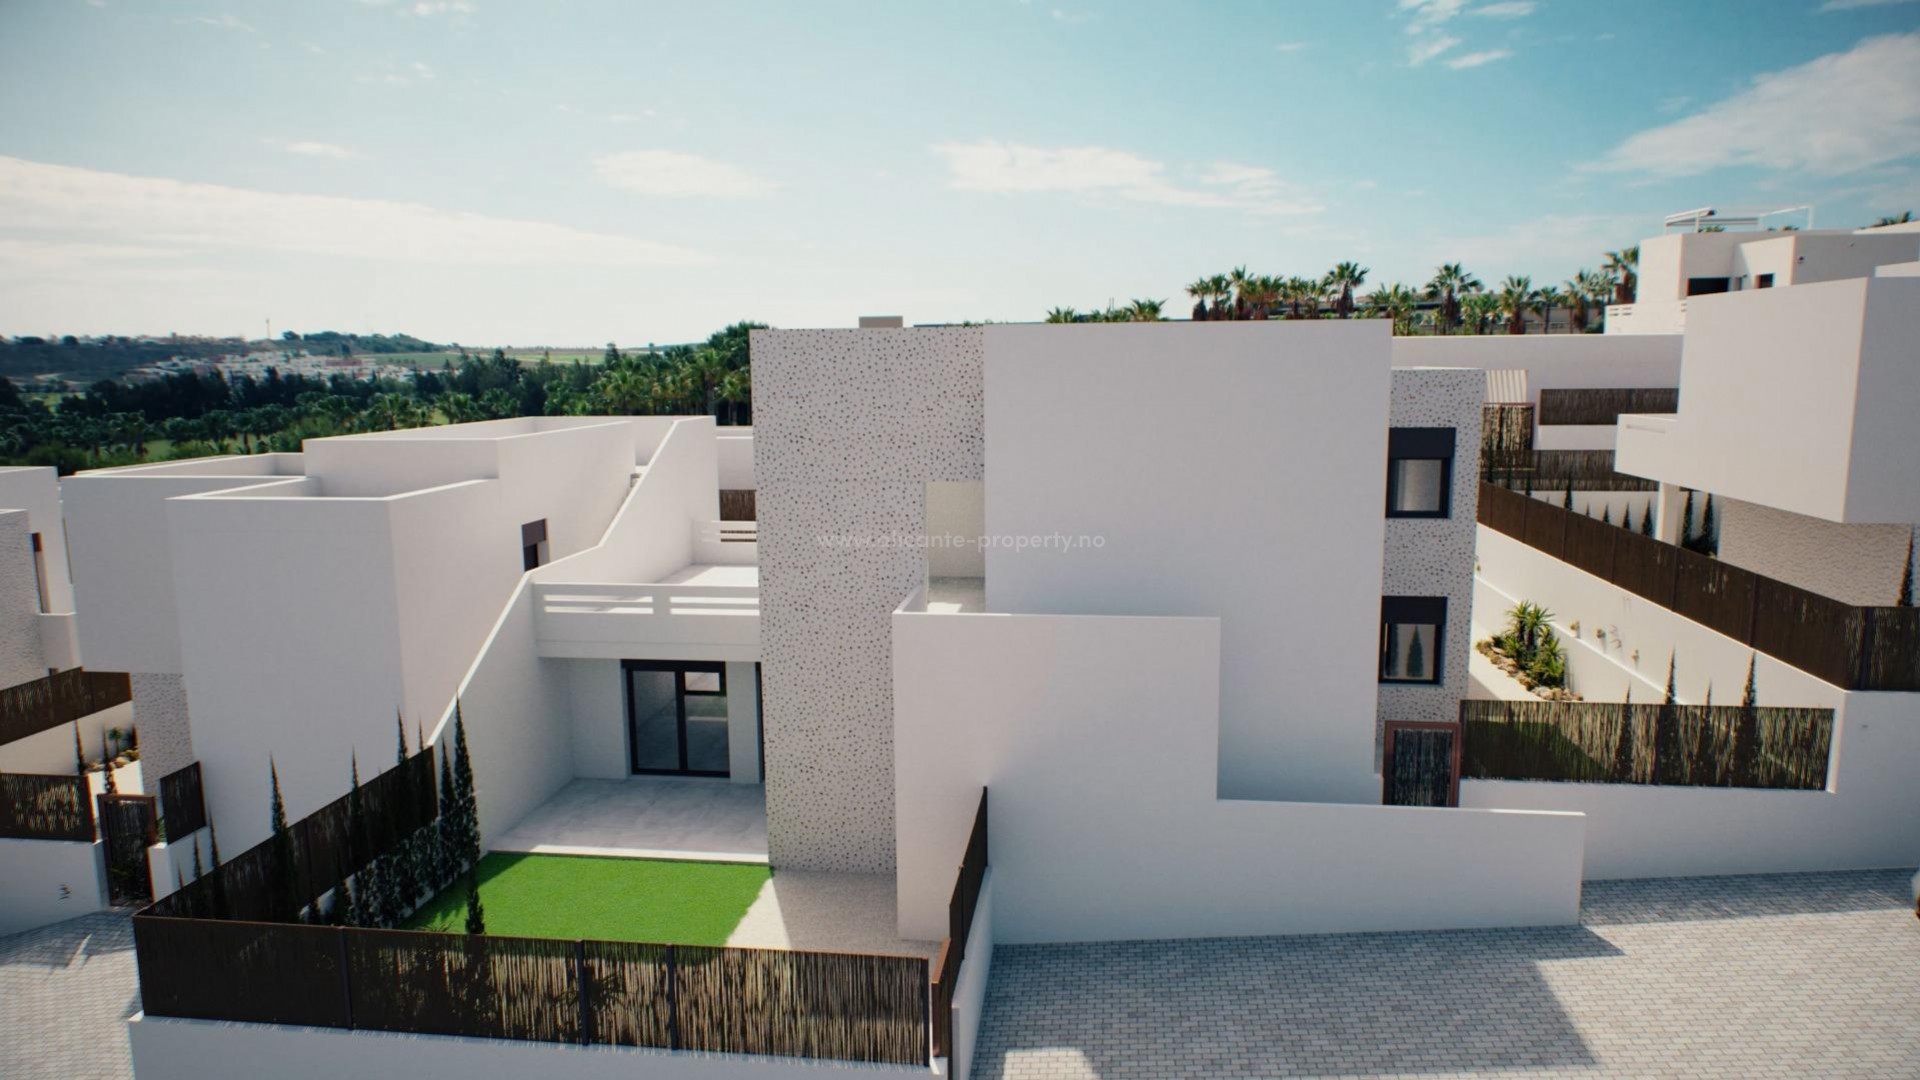 Nye bungalows/leiligheter i La Finca Golf, 3 soverom (et soverom med solarium) 2 bad, stue/spisestue med direkte utgang til romslige terrasser. Anlagt hage